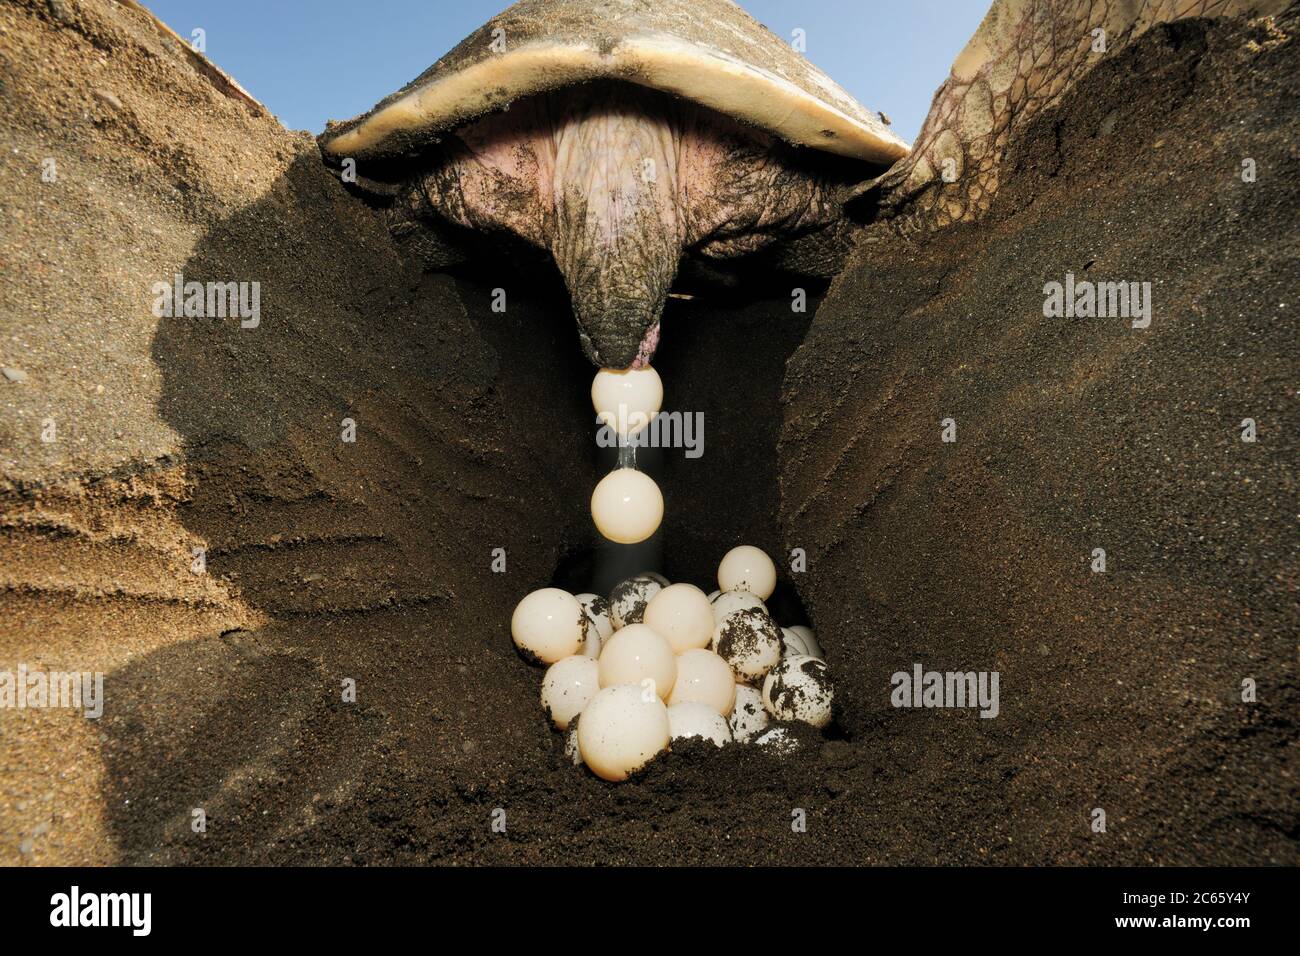 Dopo aver scavato un buco di 50 - 30 centimetri di profondità con le sue pinne posteriori, la tartaruga di mare di ridley (Lepichelys olivacea) depone circa 100 uova. [dimensioni del singolo organismo: 80 cm] Foto Stock